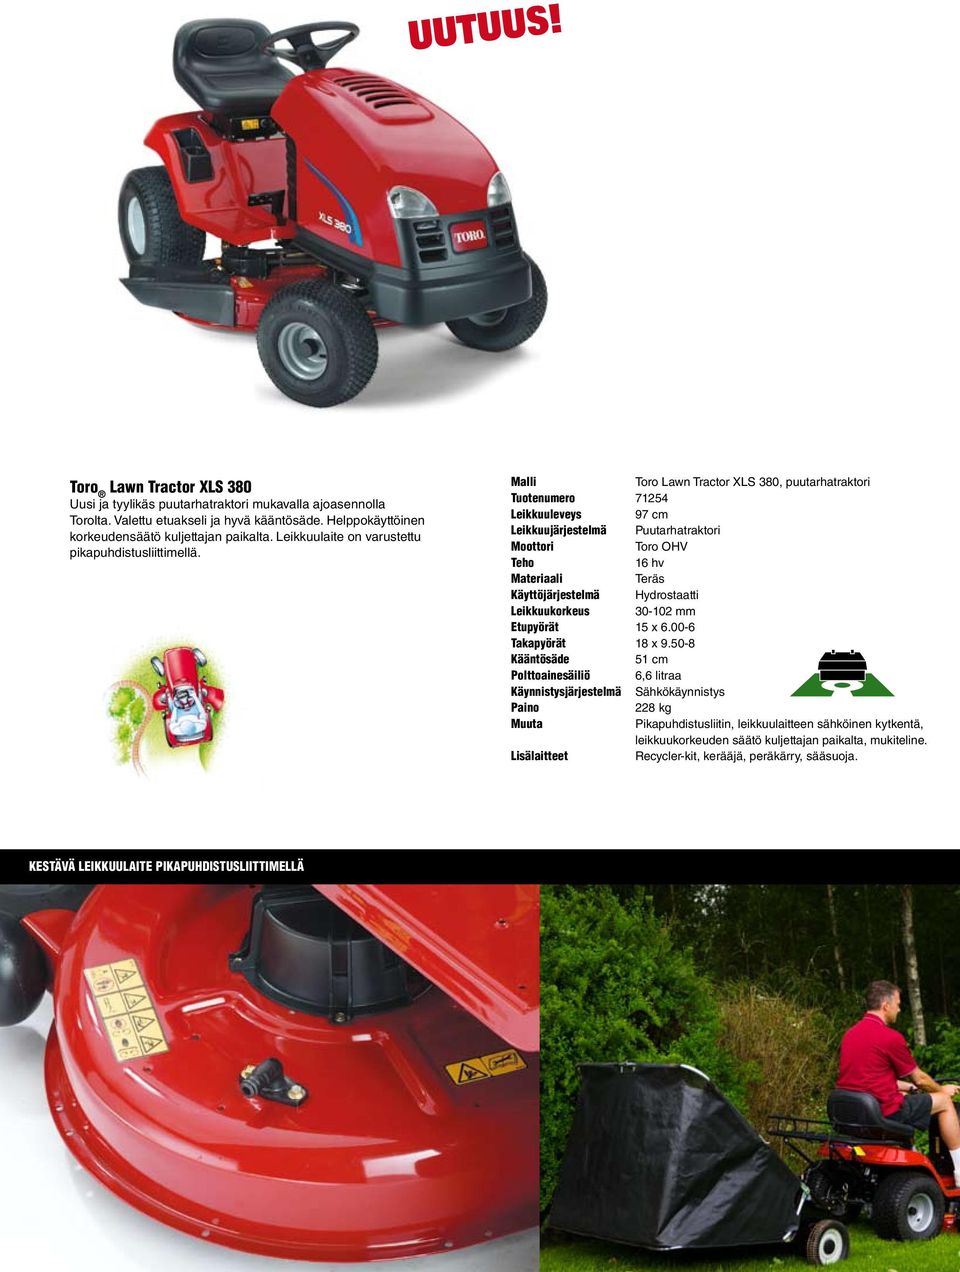 Toro Lawn Tractor XLS 380, puutarhatraktori Tuotenumero 71254 Leikkuuleveys 97 cm Leikkuujärjestelmä Puutarhatraktori Toro OHV 16 hv Käyttöjärjestelmä Hydrostaatti Leikkuukorkeus 30-102 mm